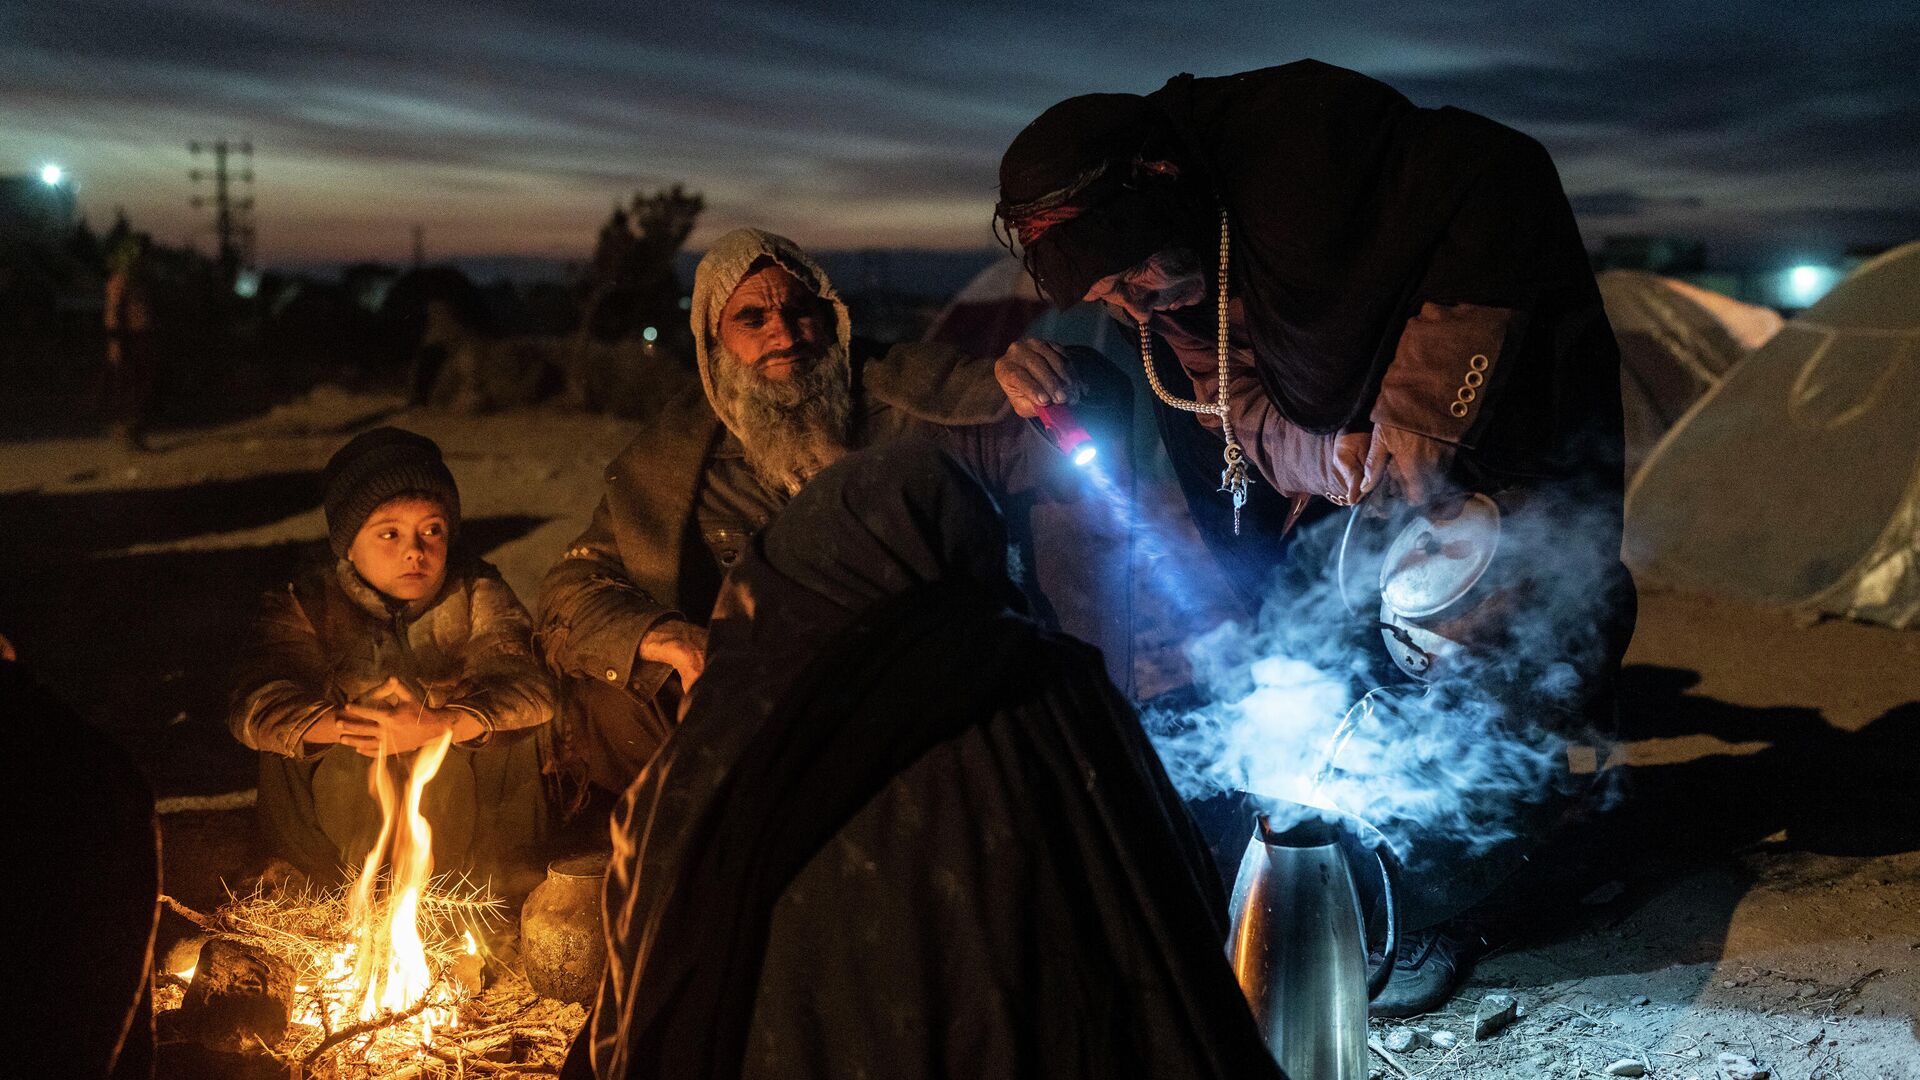 Семья беженцев готовит чай около Управления по чрезвычайным ситуациям Афганистана в Герате  - РИА Новости, 1920, 23.01.2022